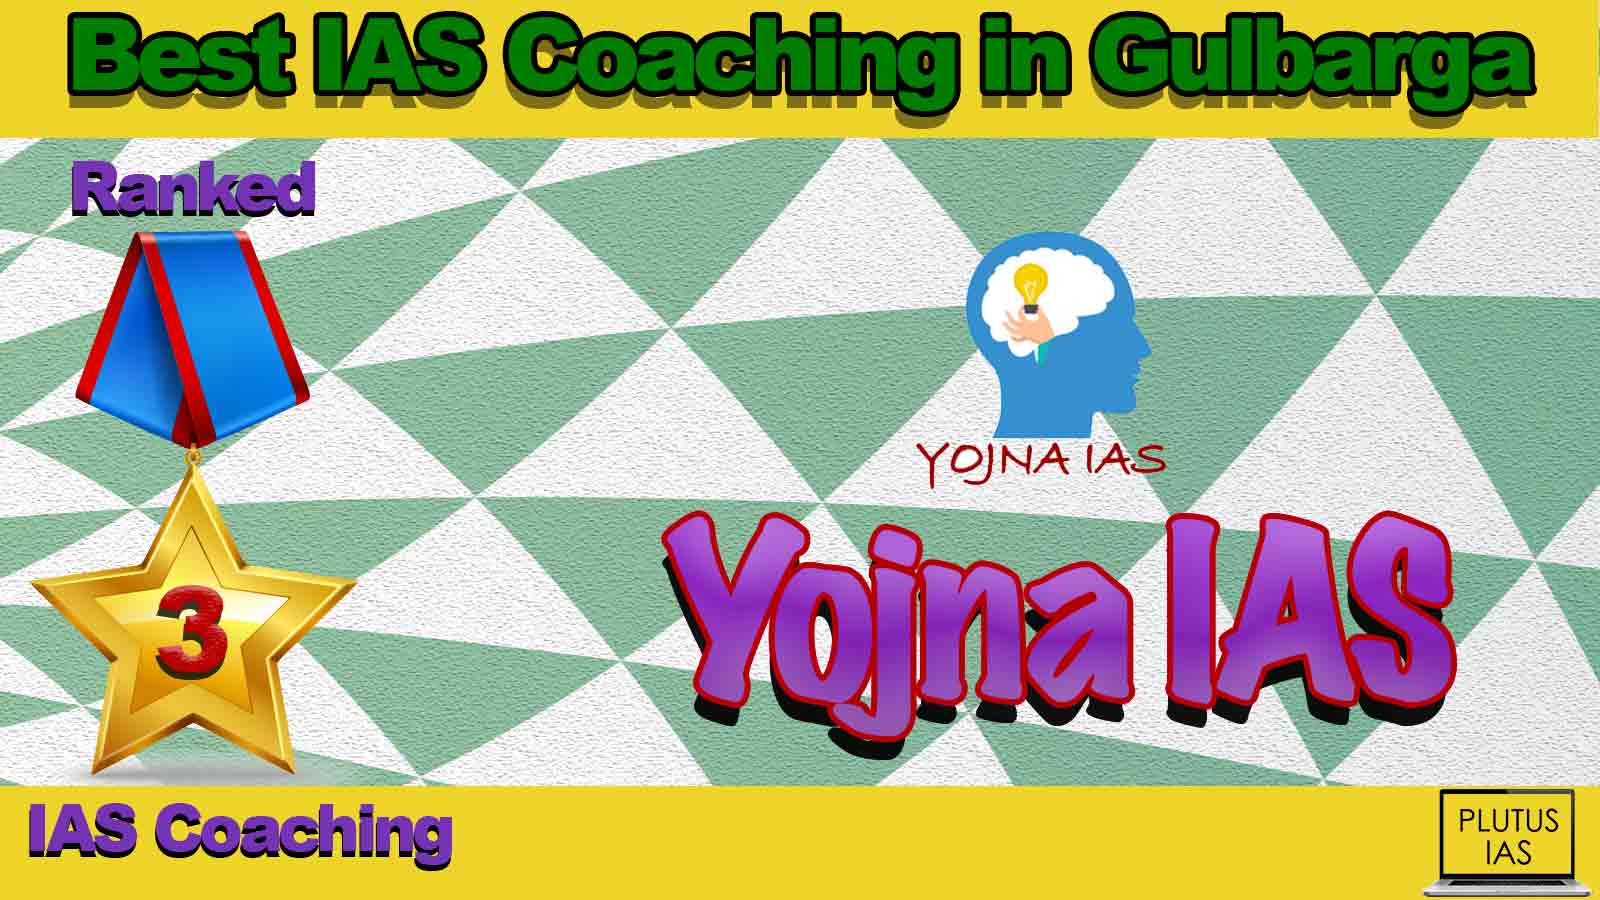 Top IAS Coaching in Gulbarga